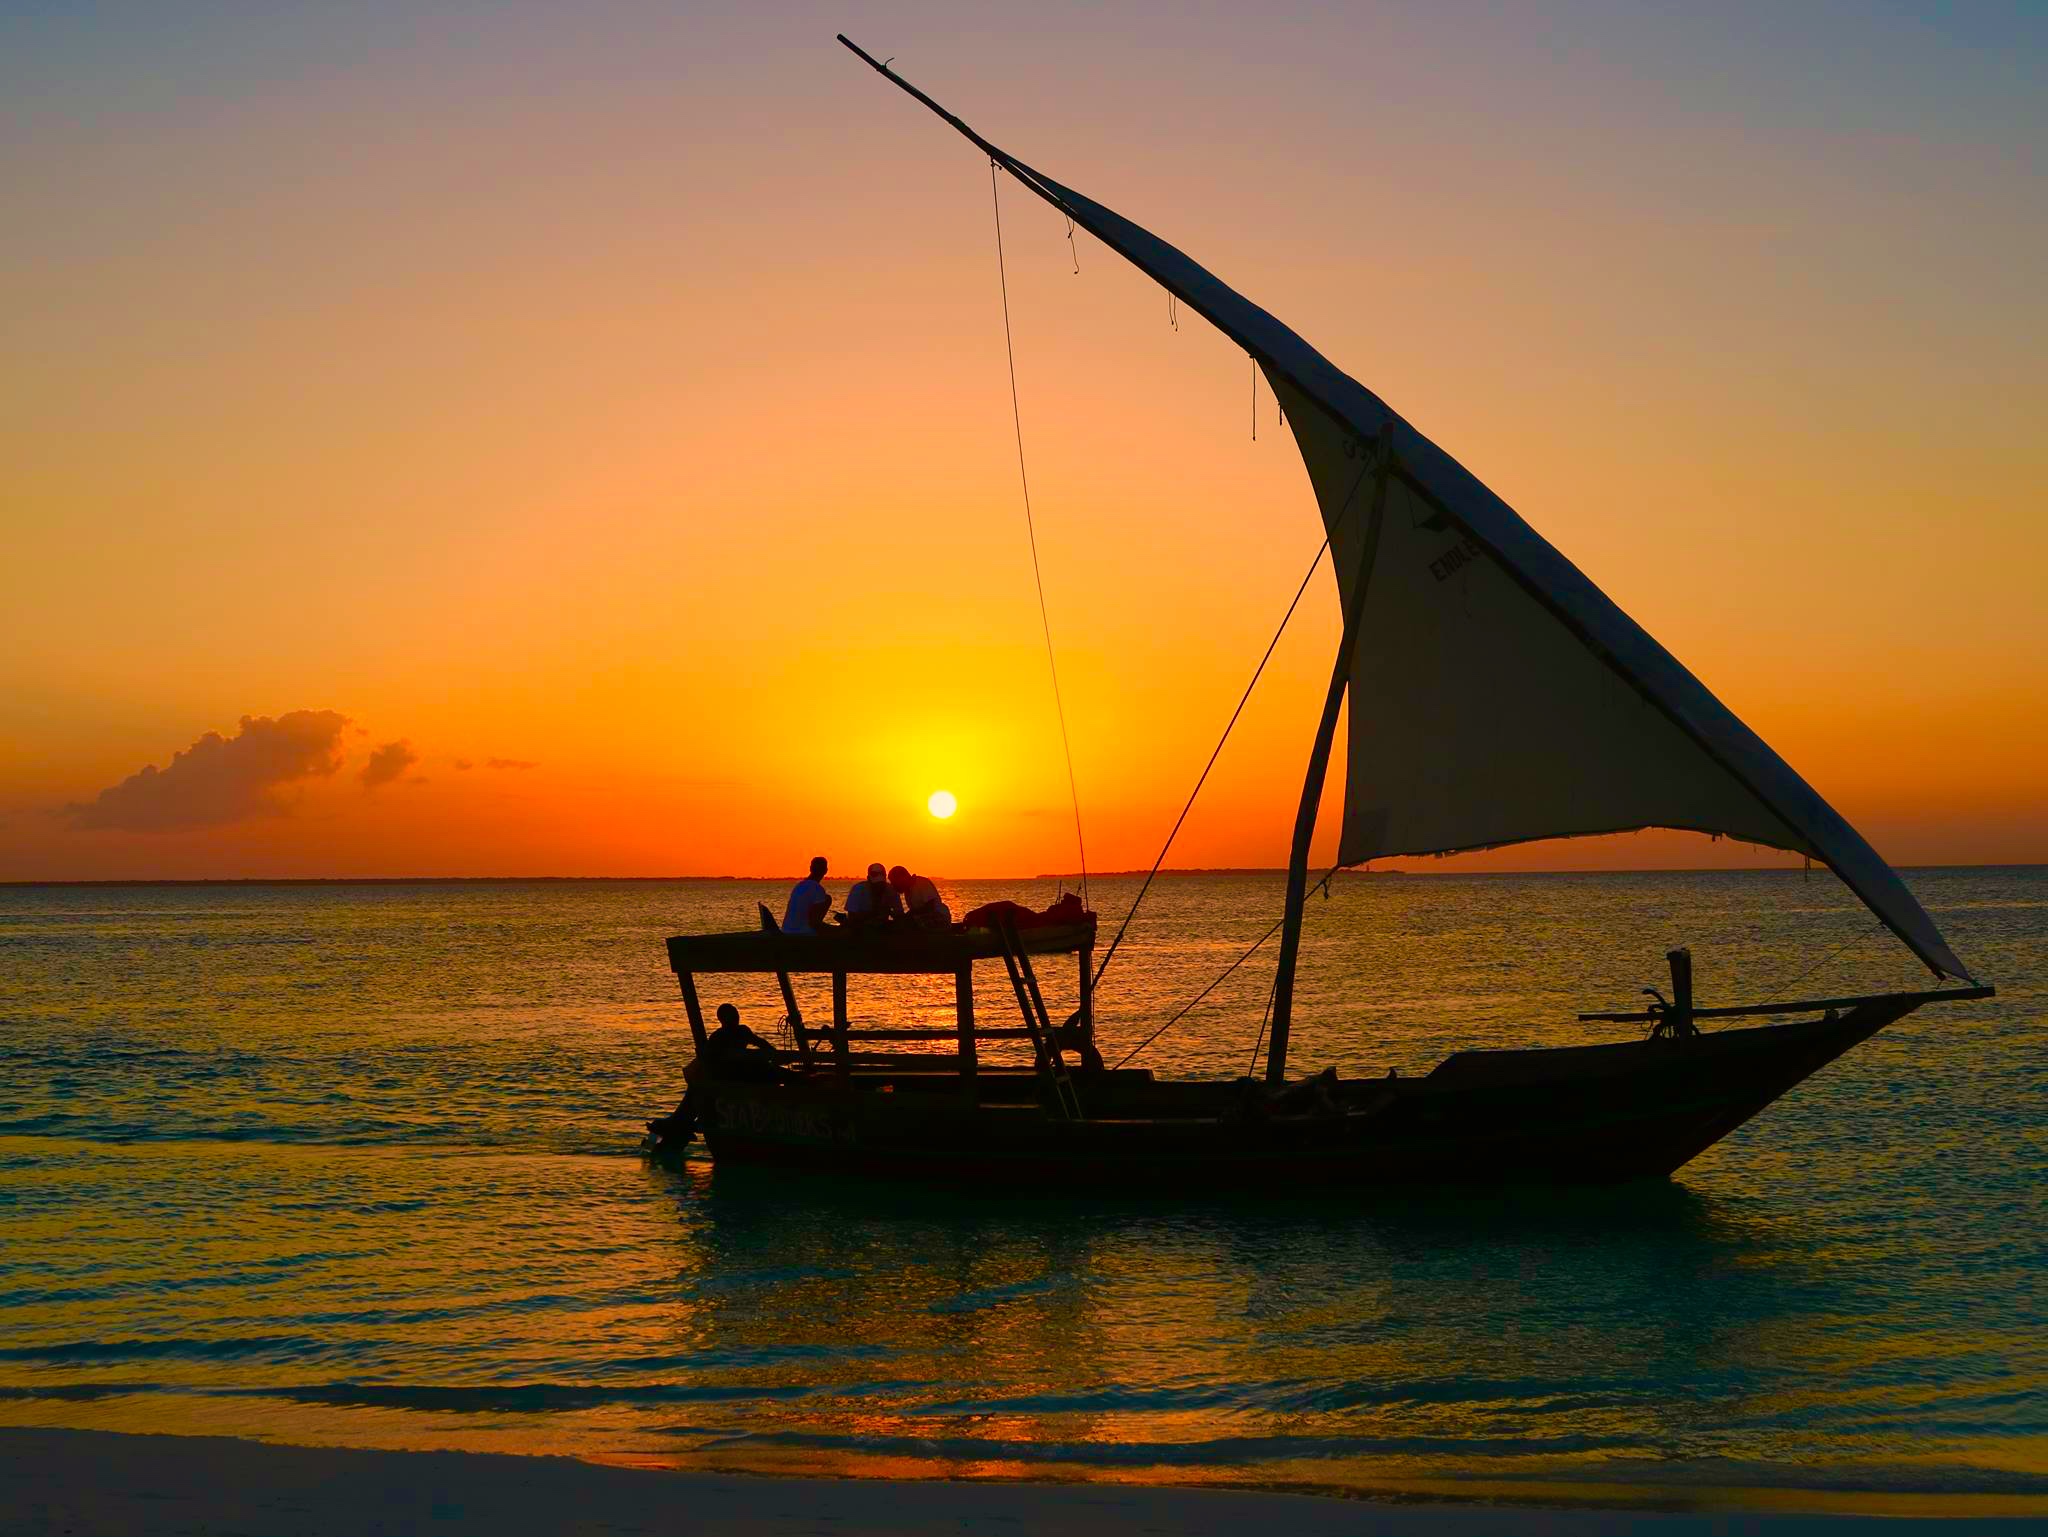 sunset in Zanzibar...